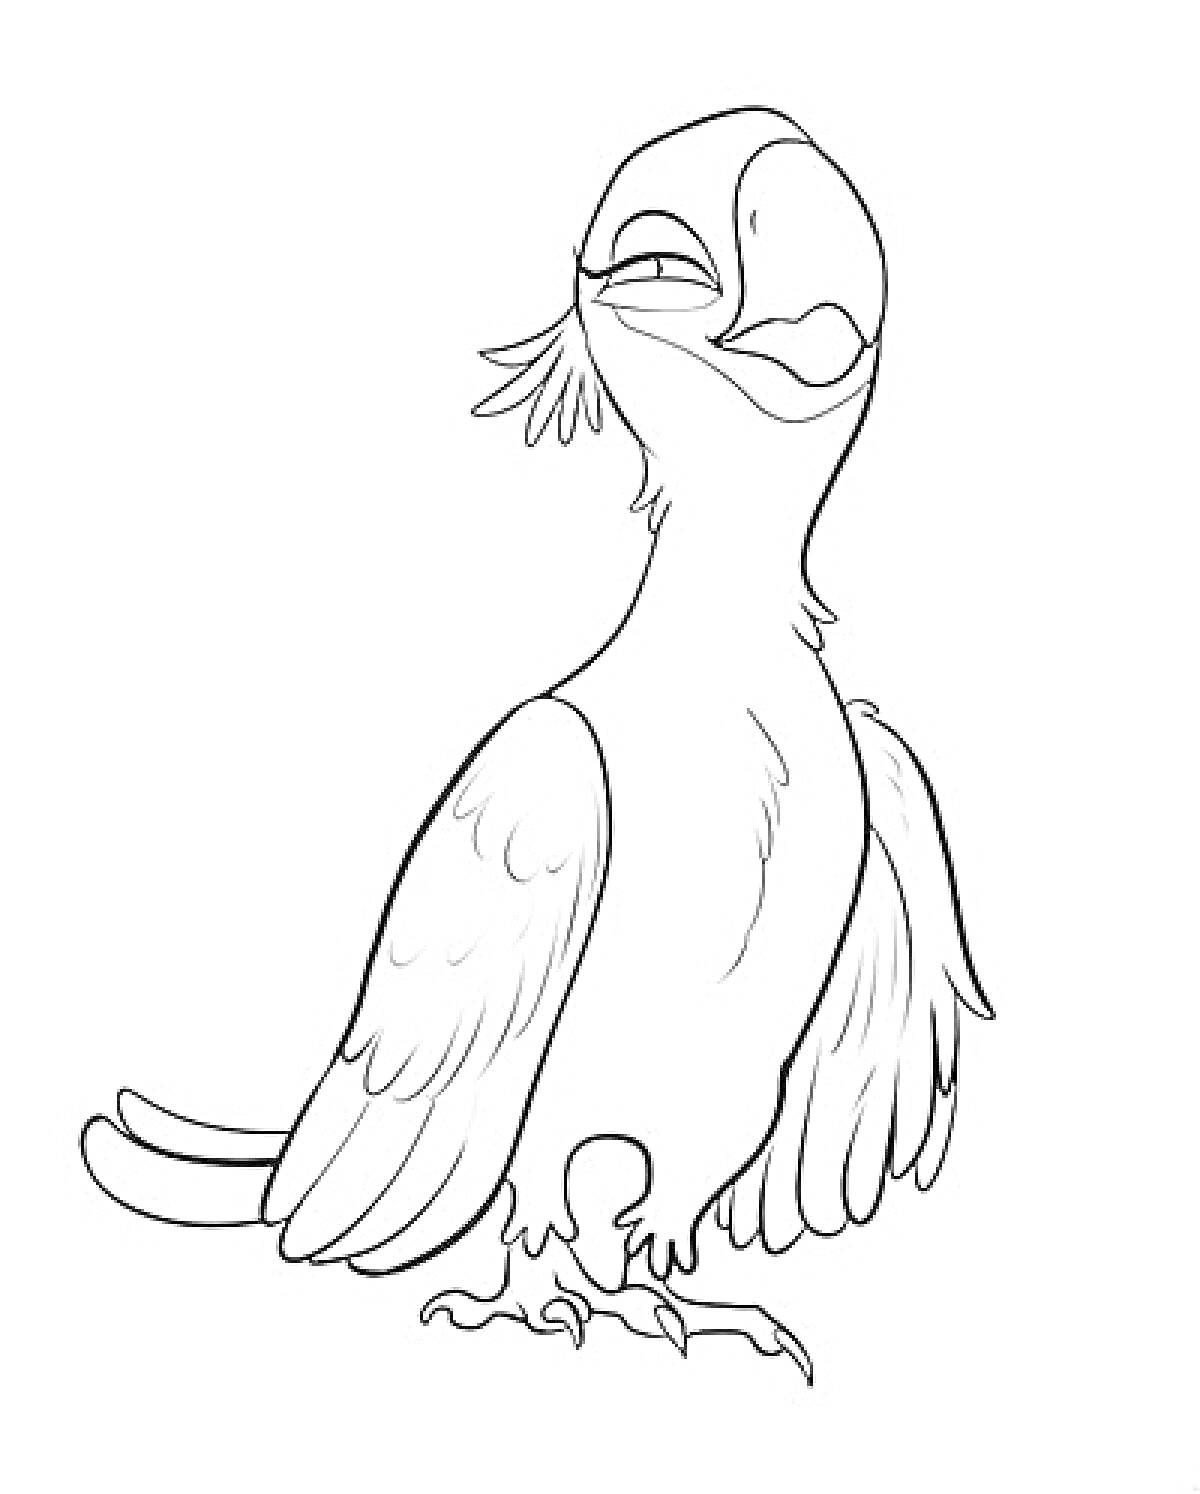 Раскраска Попугай из Рио 2, стоящий на земле с поднятым клювом и расправленными крыльями